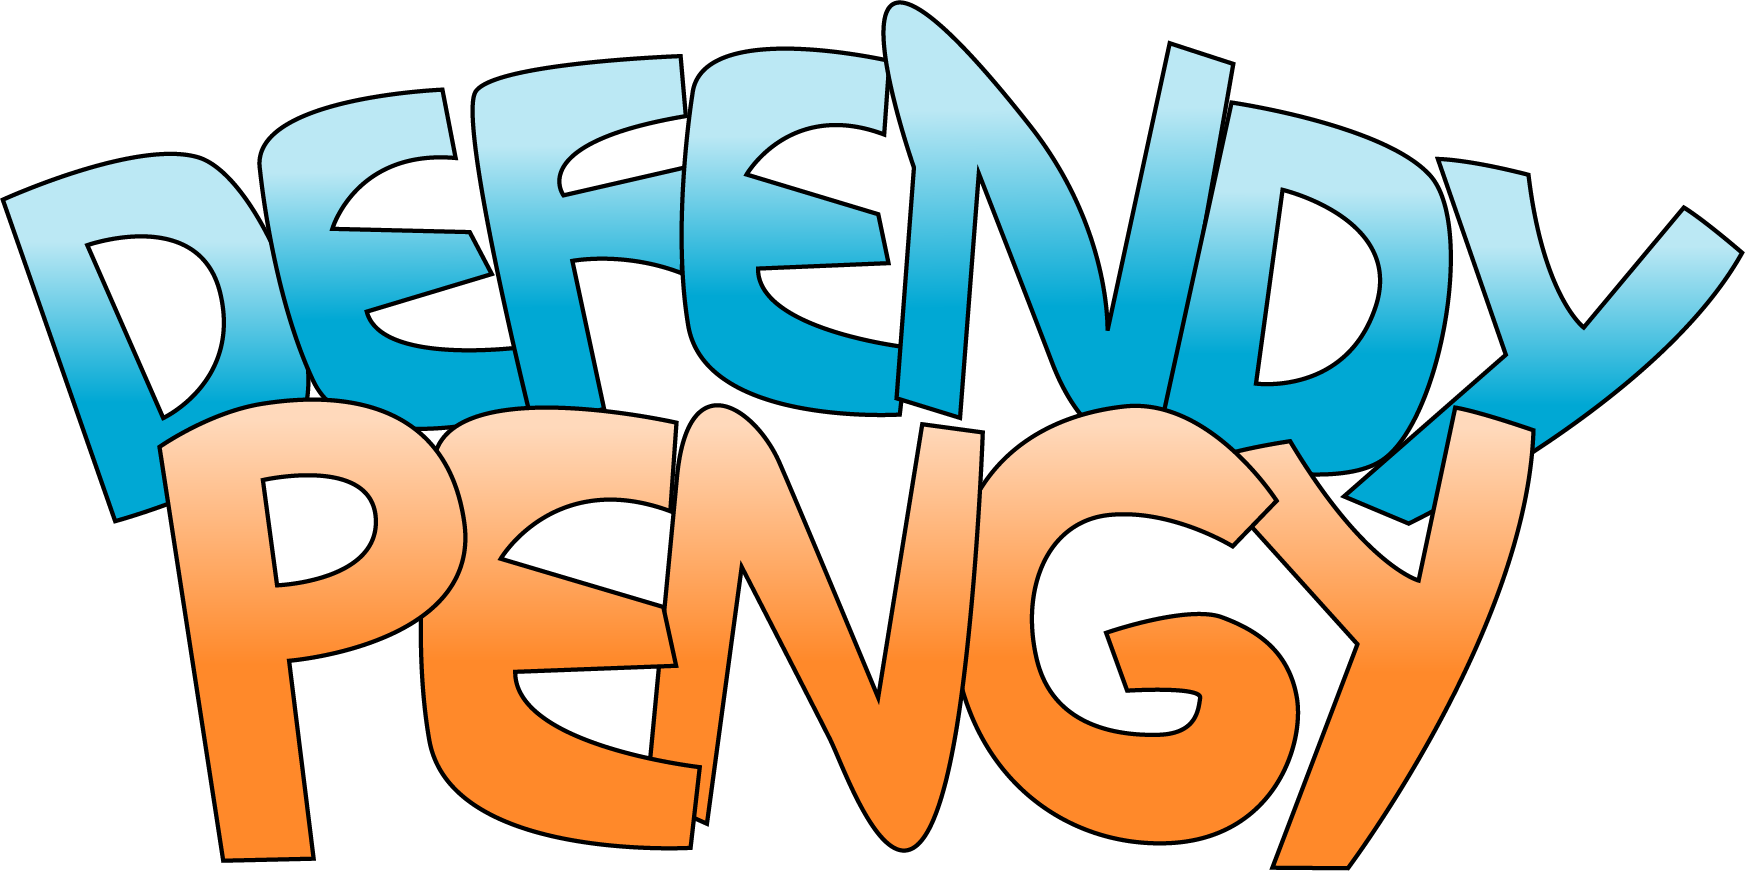 Defendy Pengy logo